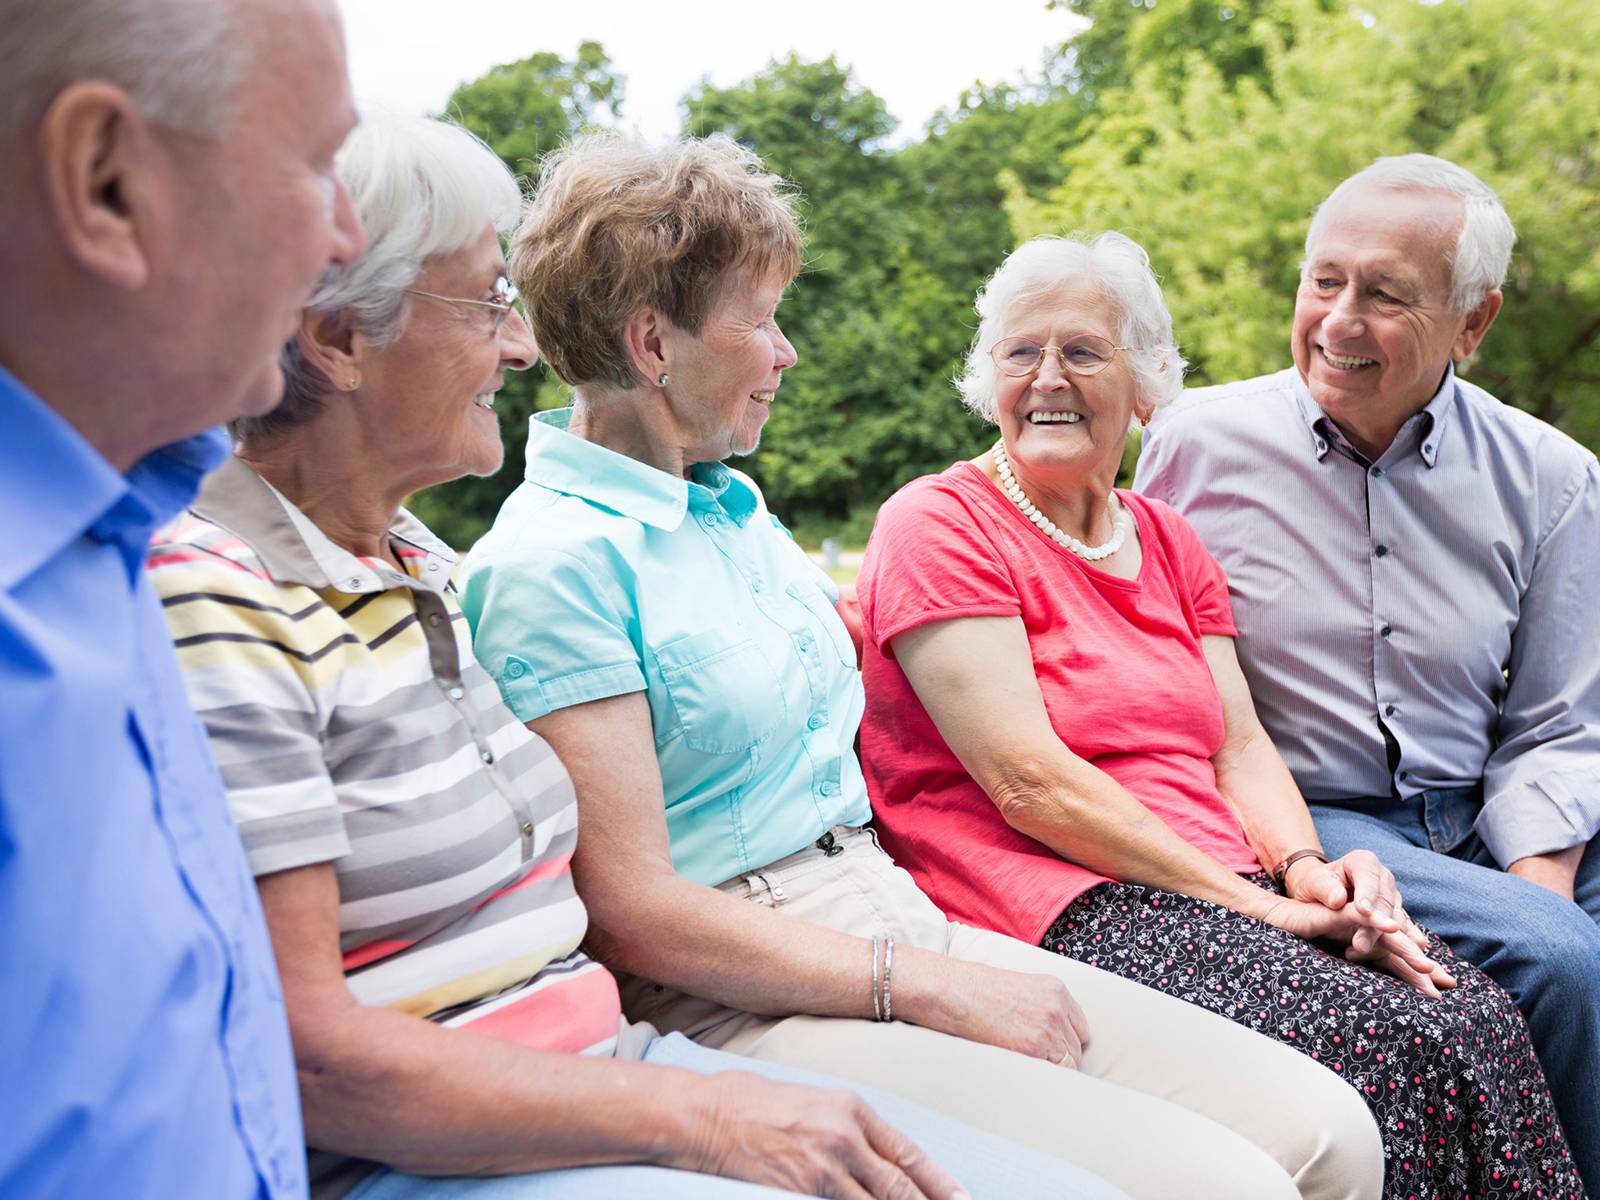 Fünf ältere gut gelaunte Menschen sitzen auf einer Bank im Grünen und lachen gemeinsam